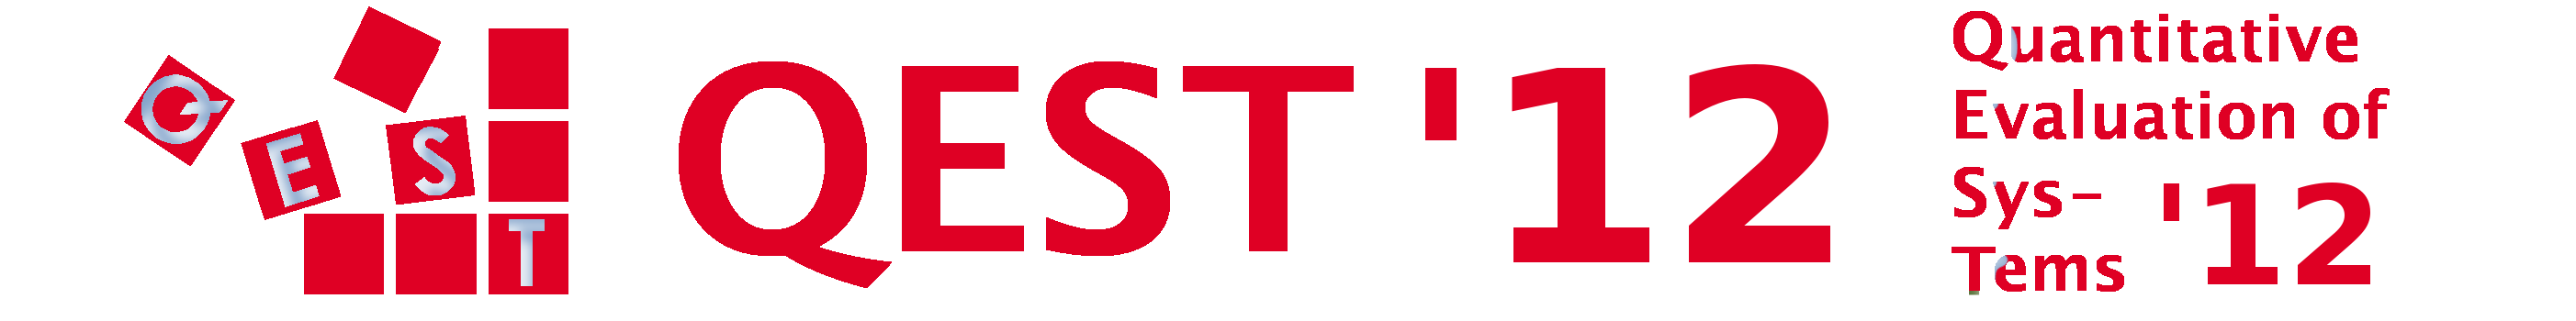 qest logo